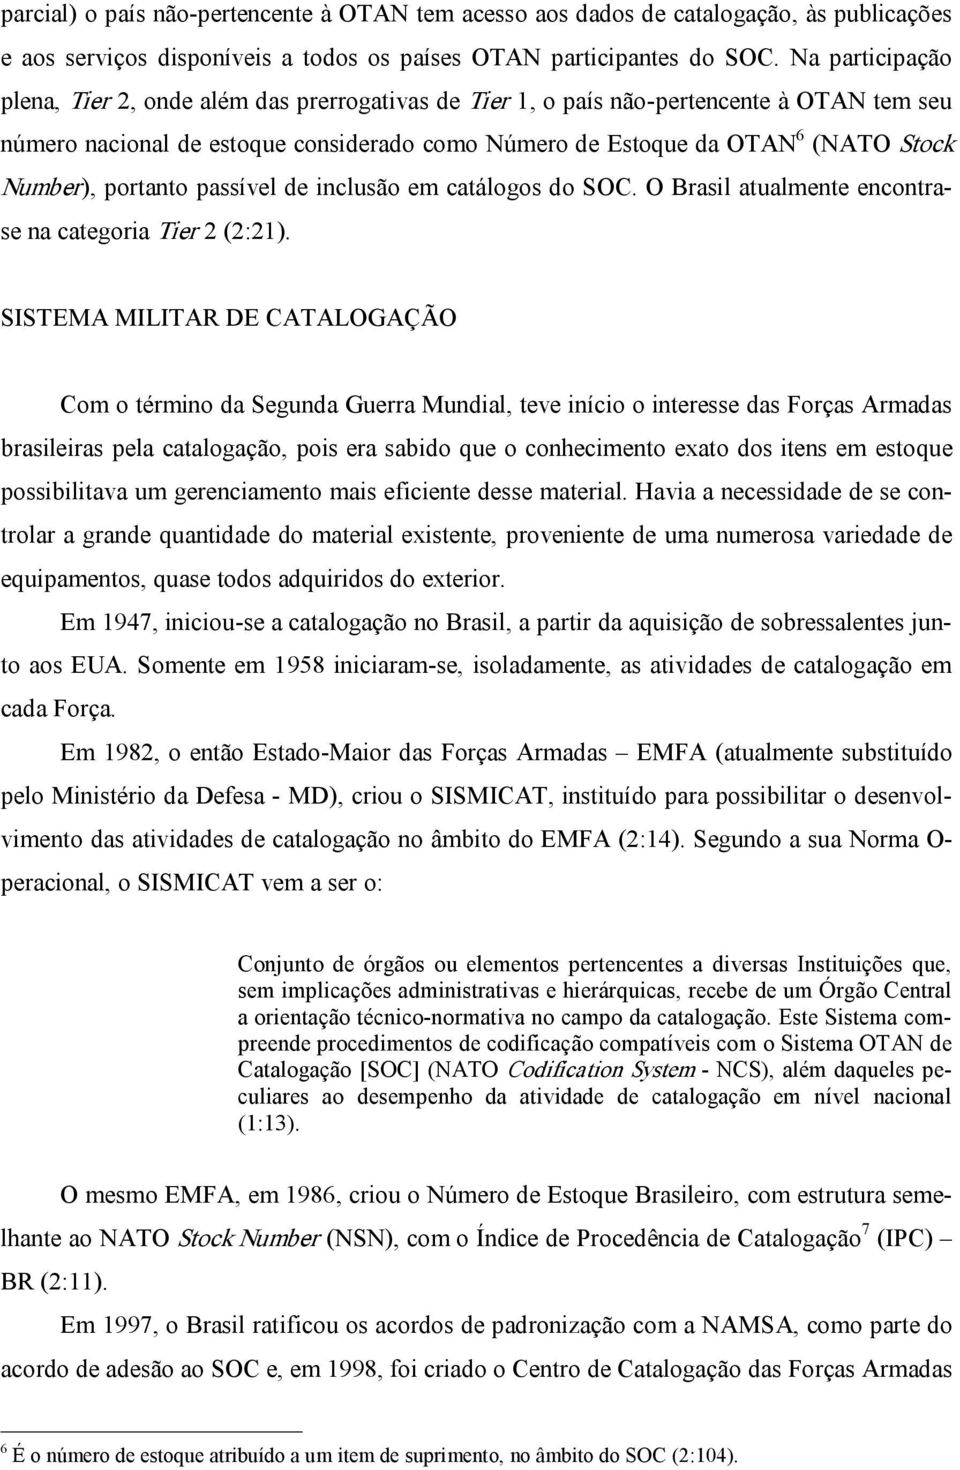 Number), portanto passível de inclusão em catálogos do SOC. O Brasil atualmente encontrase na categoria Tier 2 (2:21).